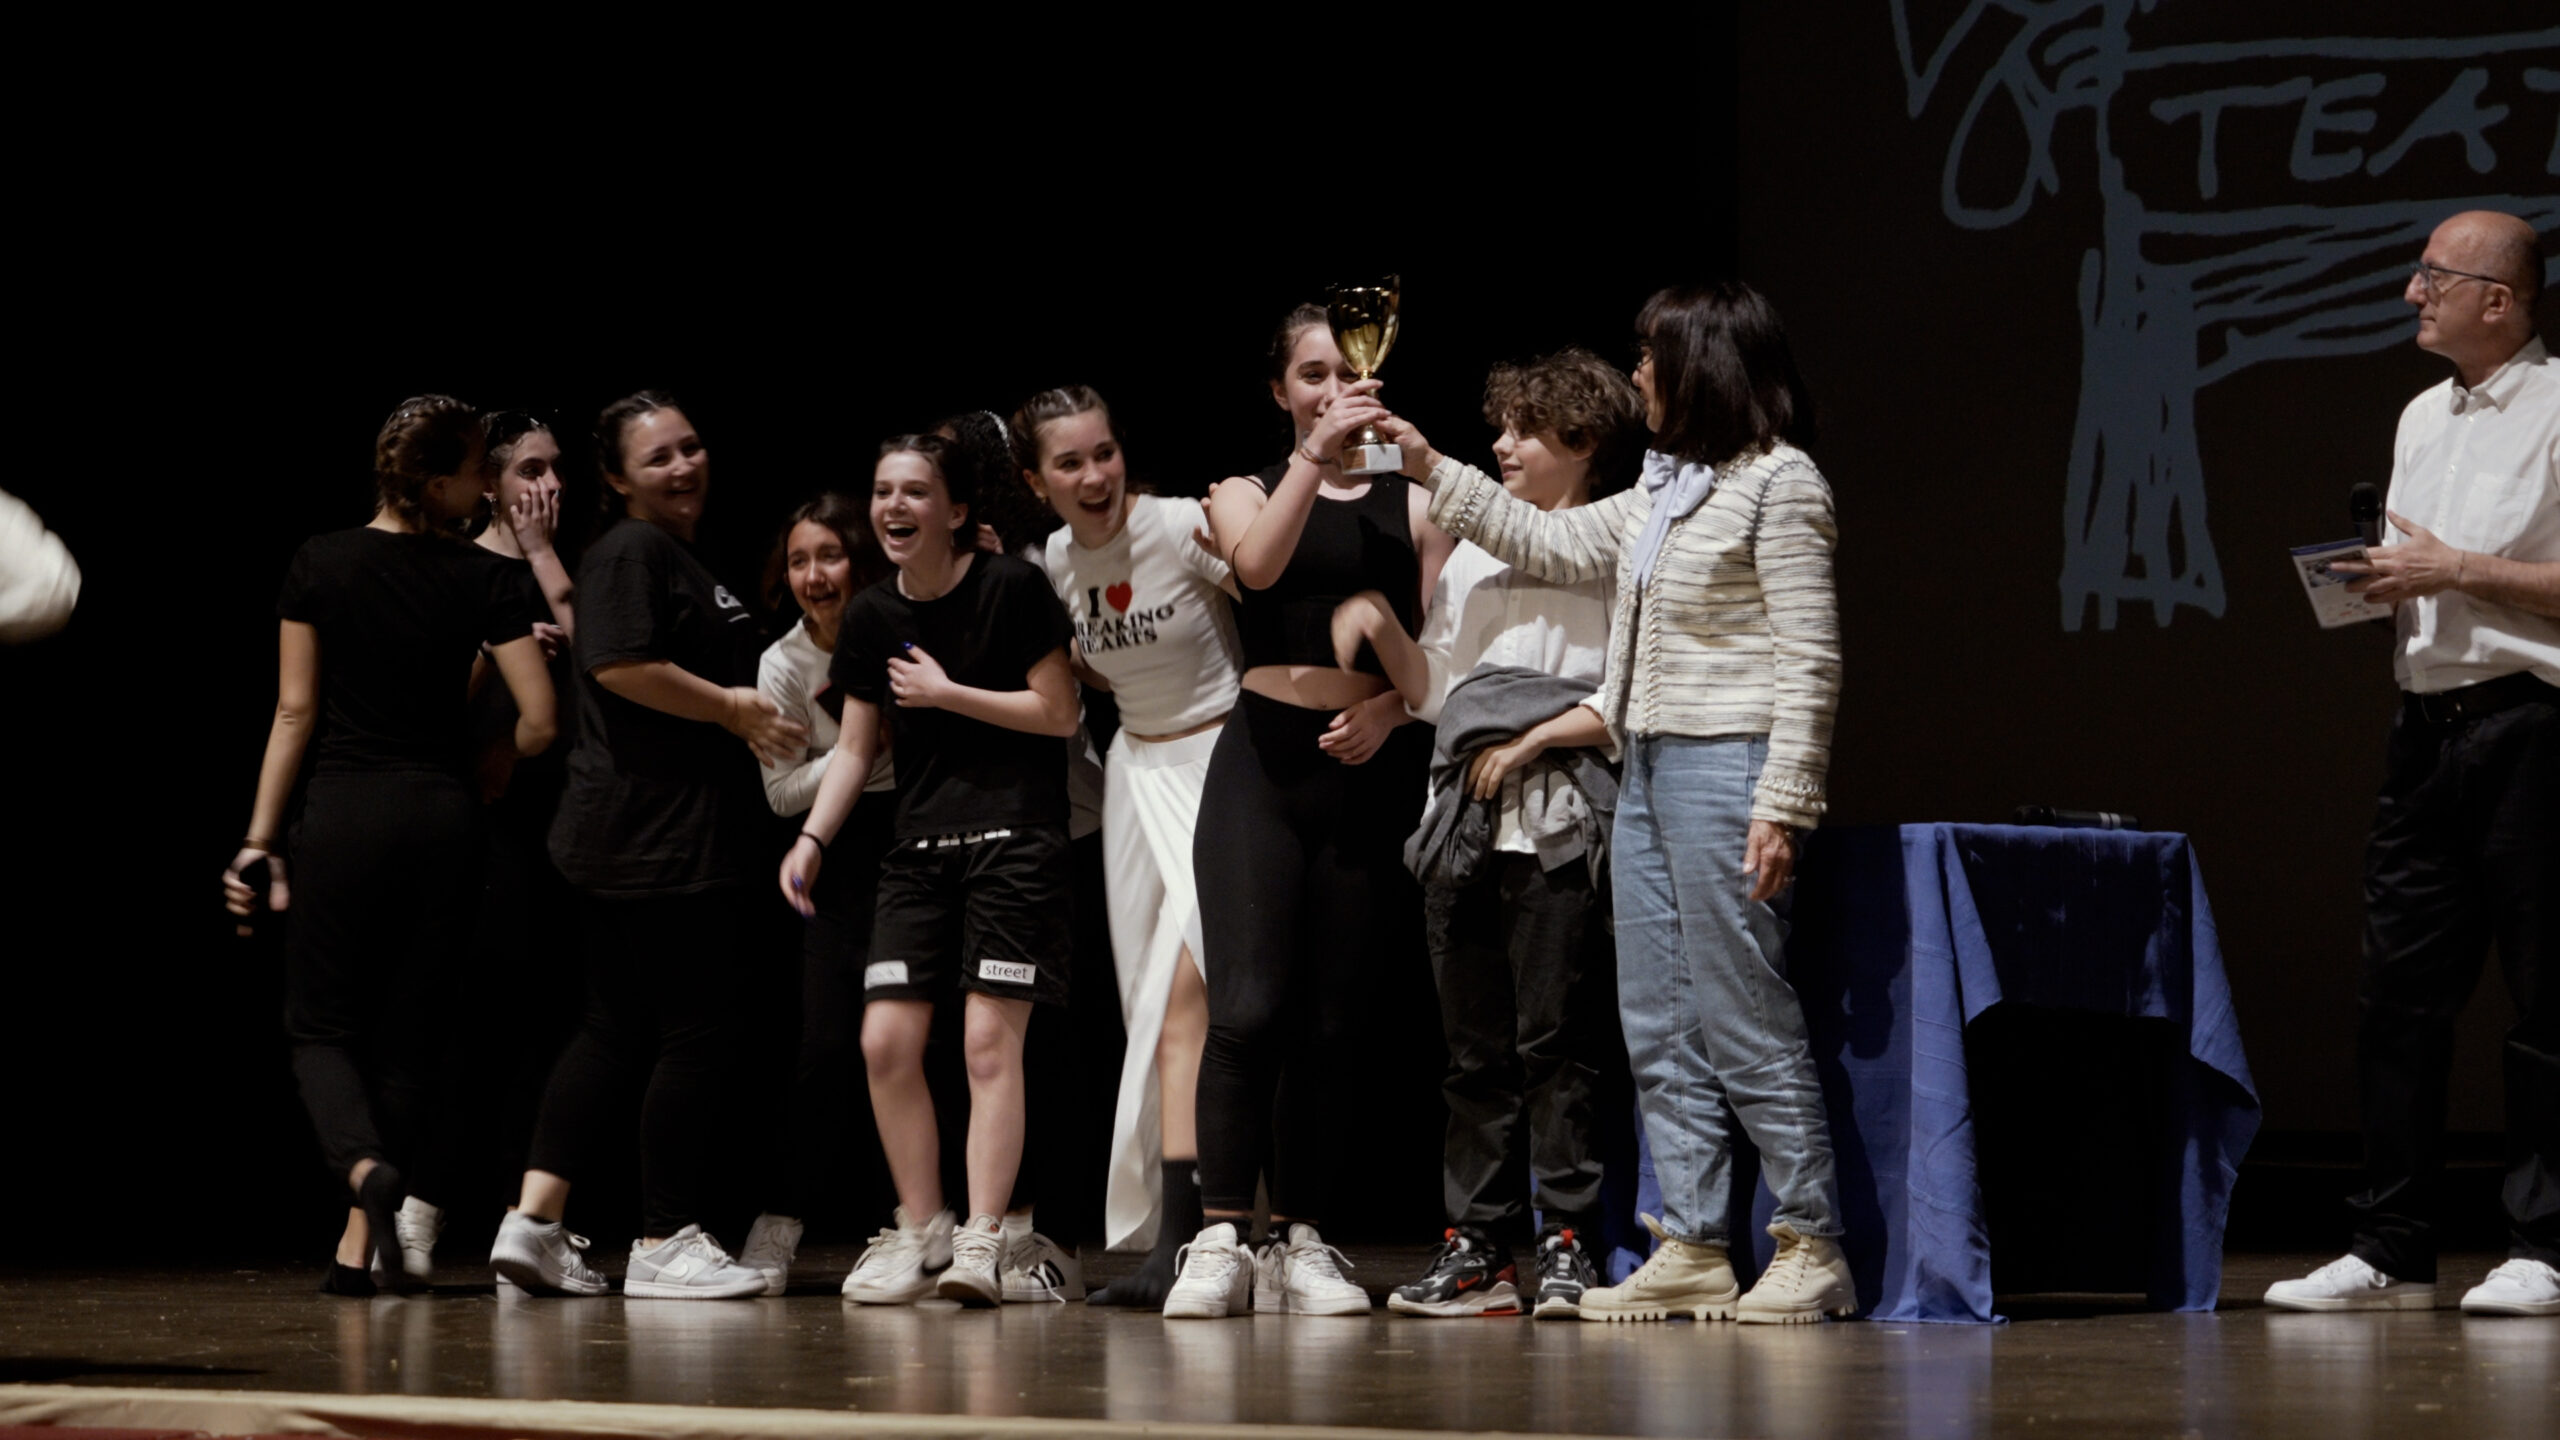 FATF: la Scuola Secondaria di Primo grado J.Piaget di La Spezia con lo spettacolo La Voce si aggiudica il primo posto nella prima giornata